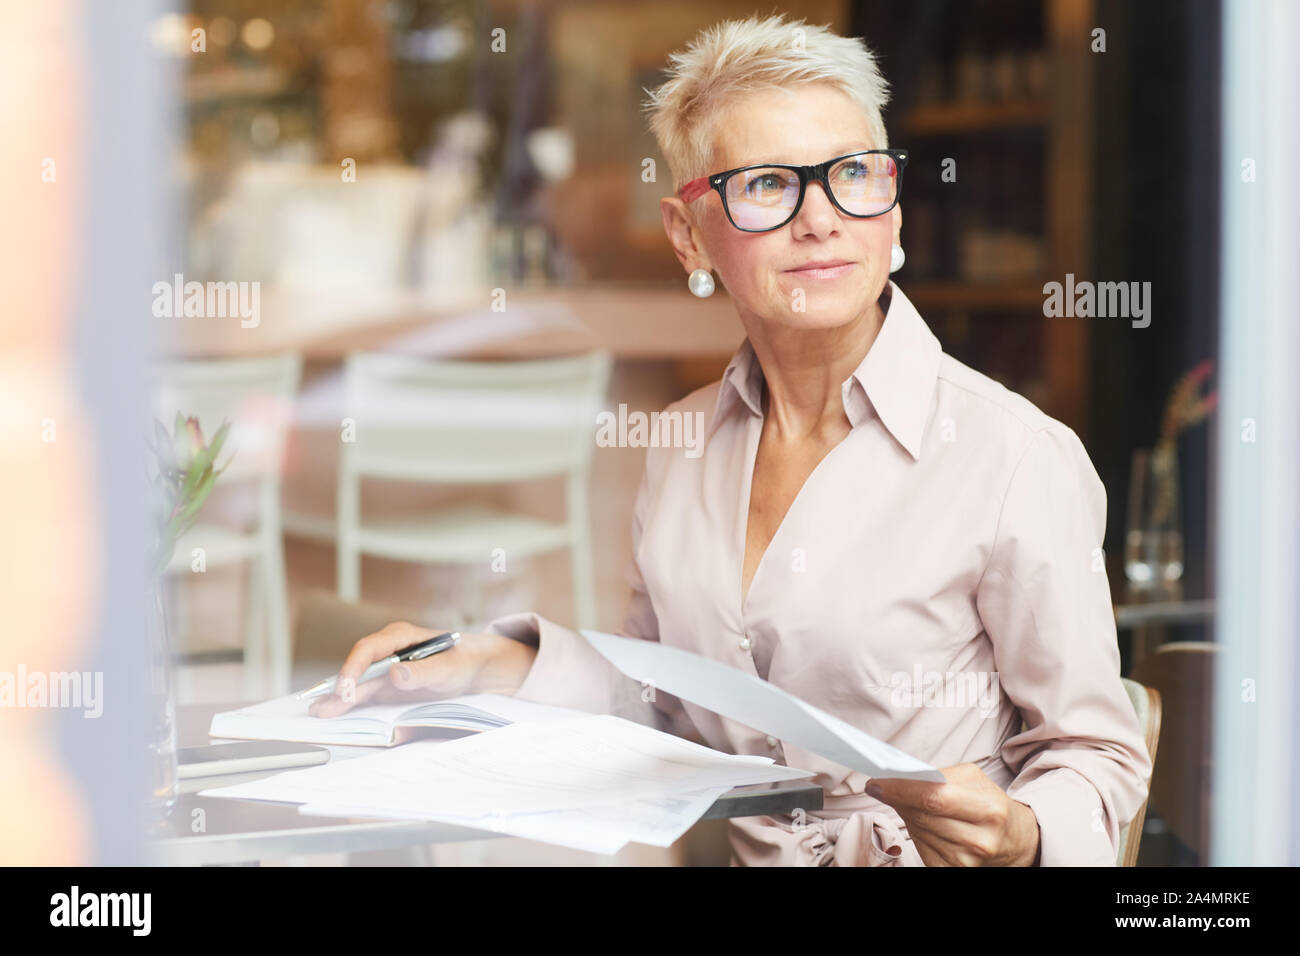 Femme mature blonde avec des cheveux courts en lunettes assis à la table et l'utilisation de documents in cafe Banque D'Images